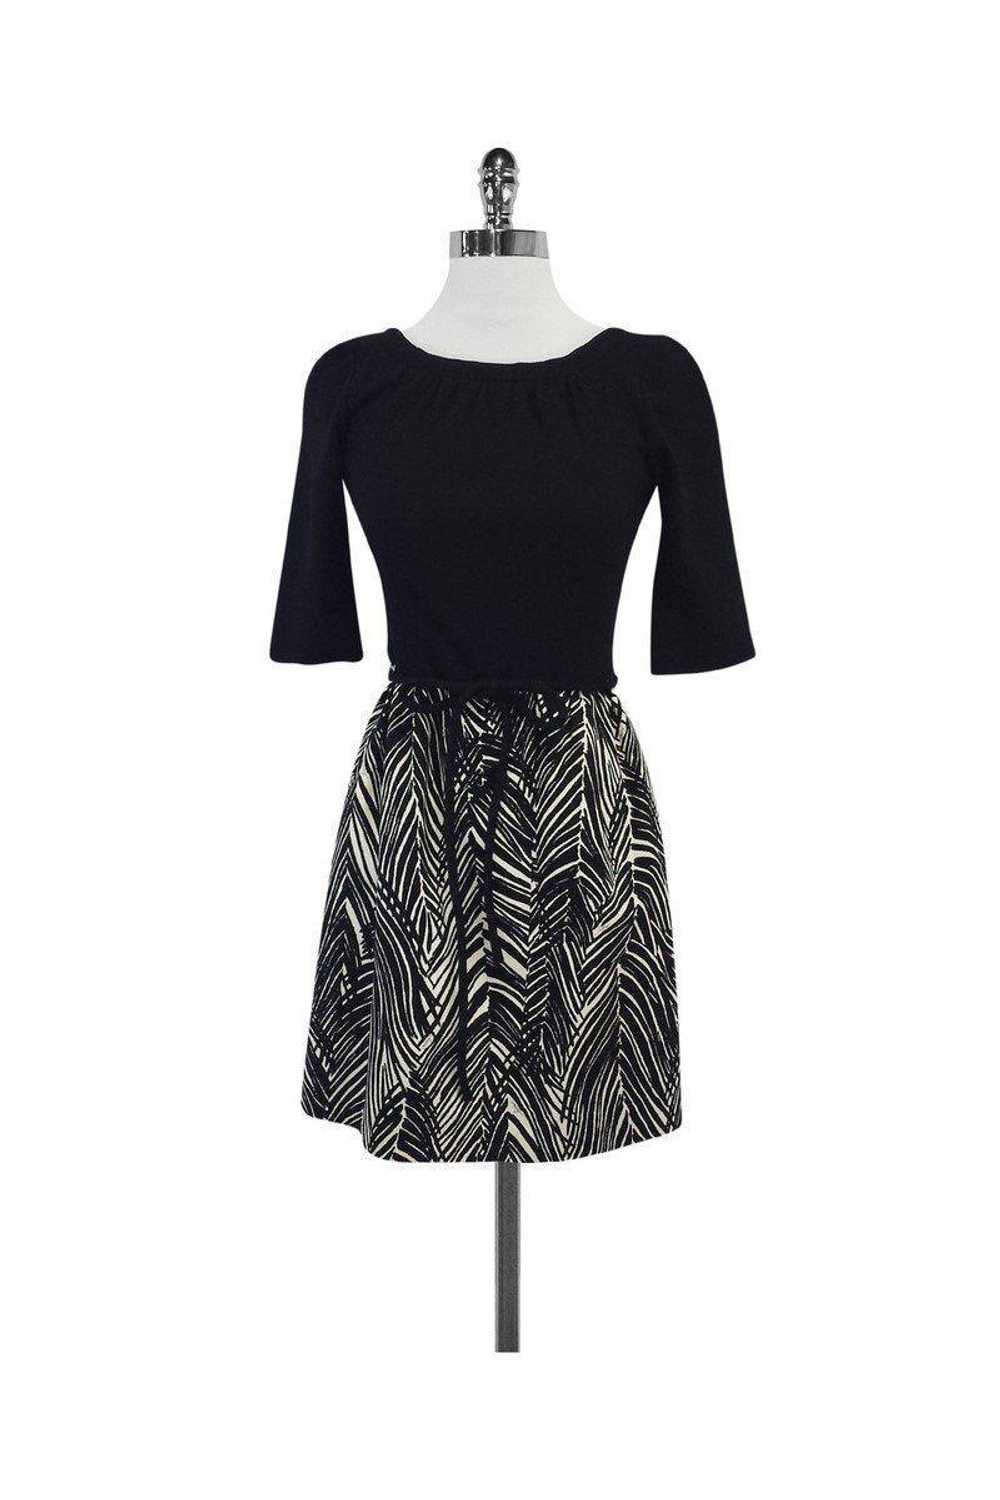 Milly - Black & Tan Print Cotton Dress Sz 2 - image 1